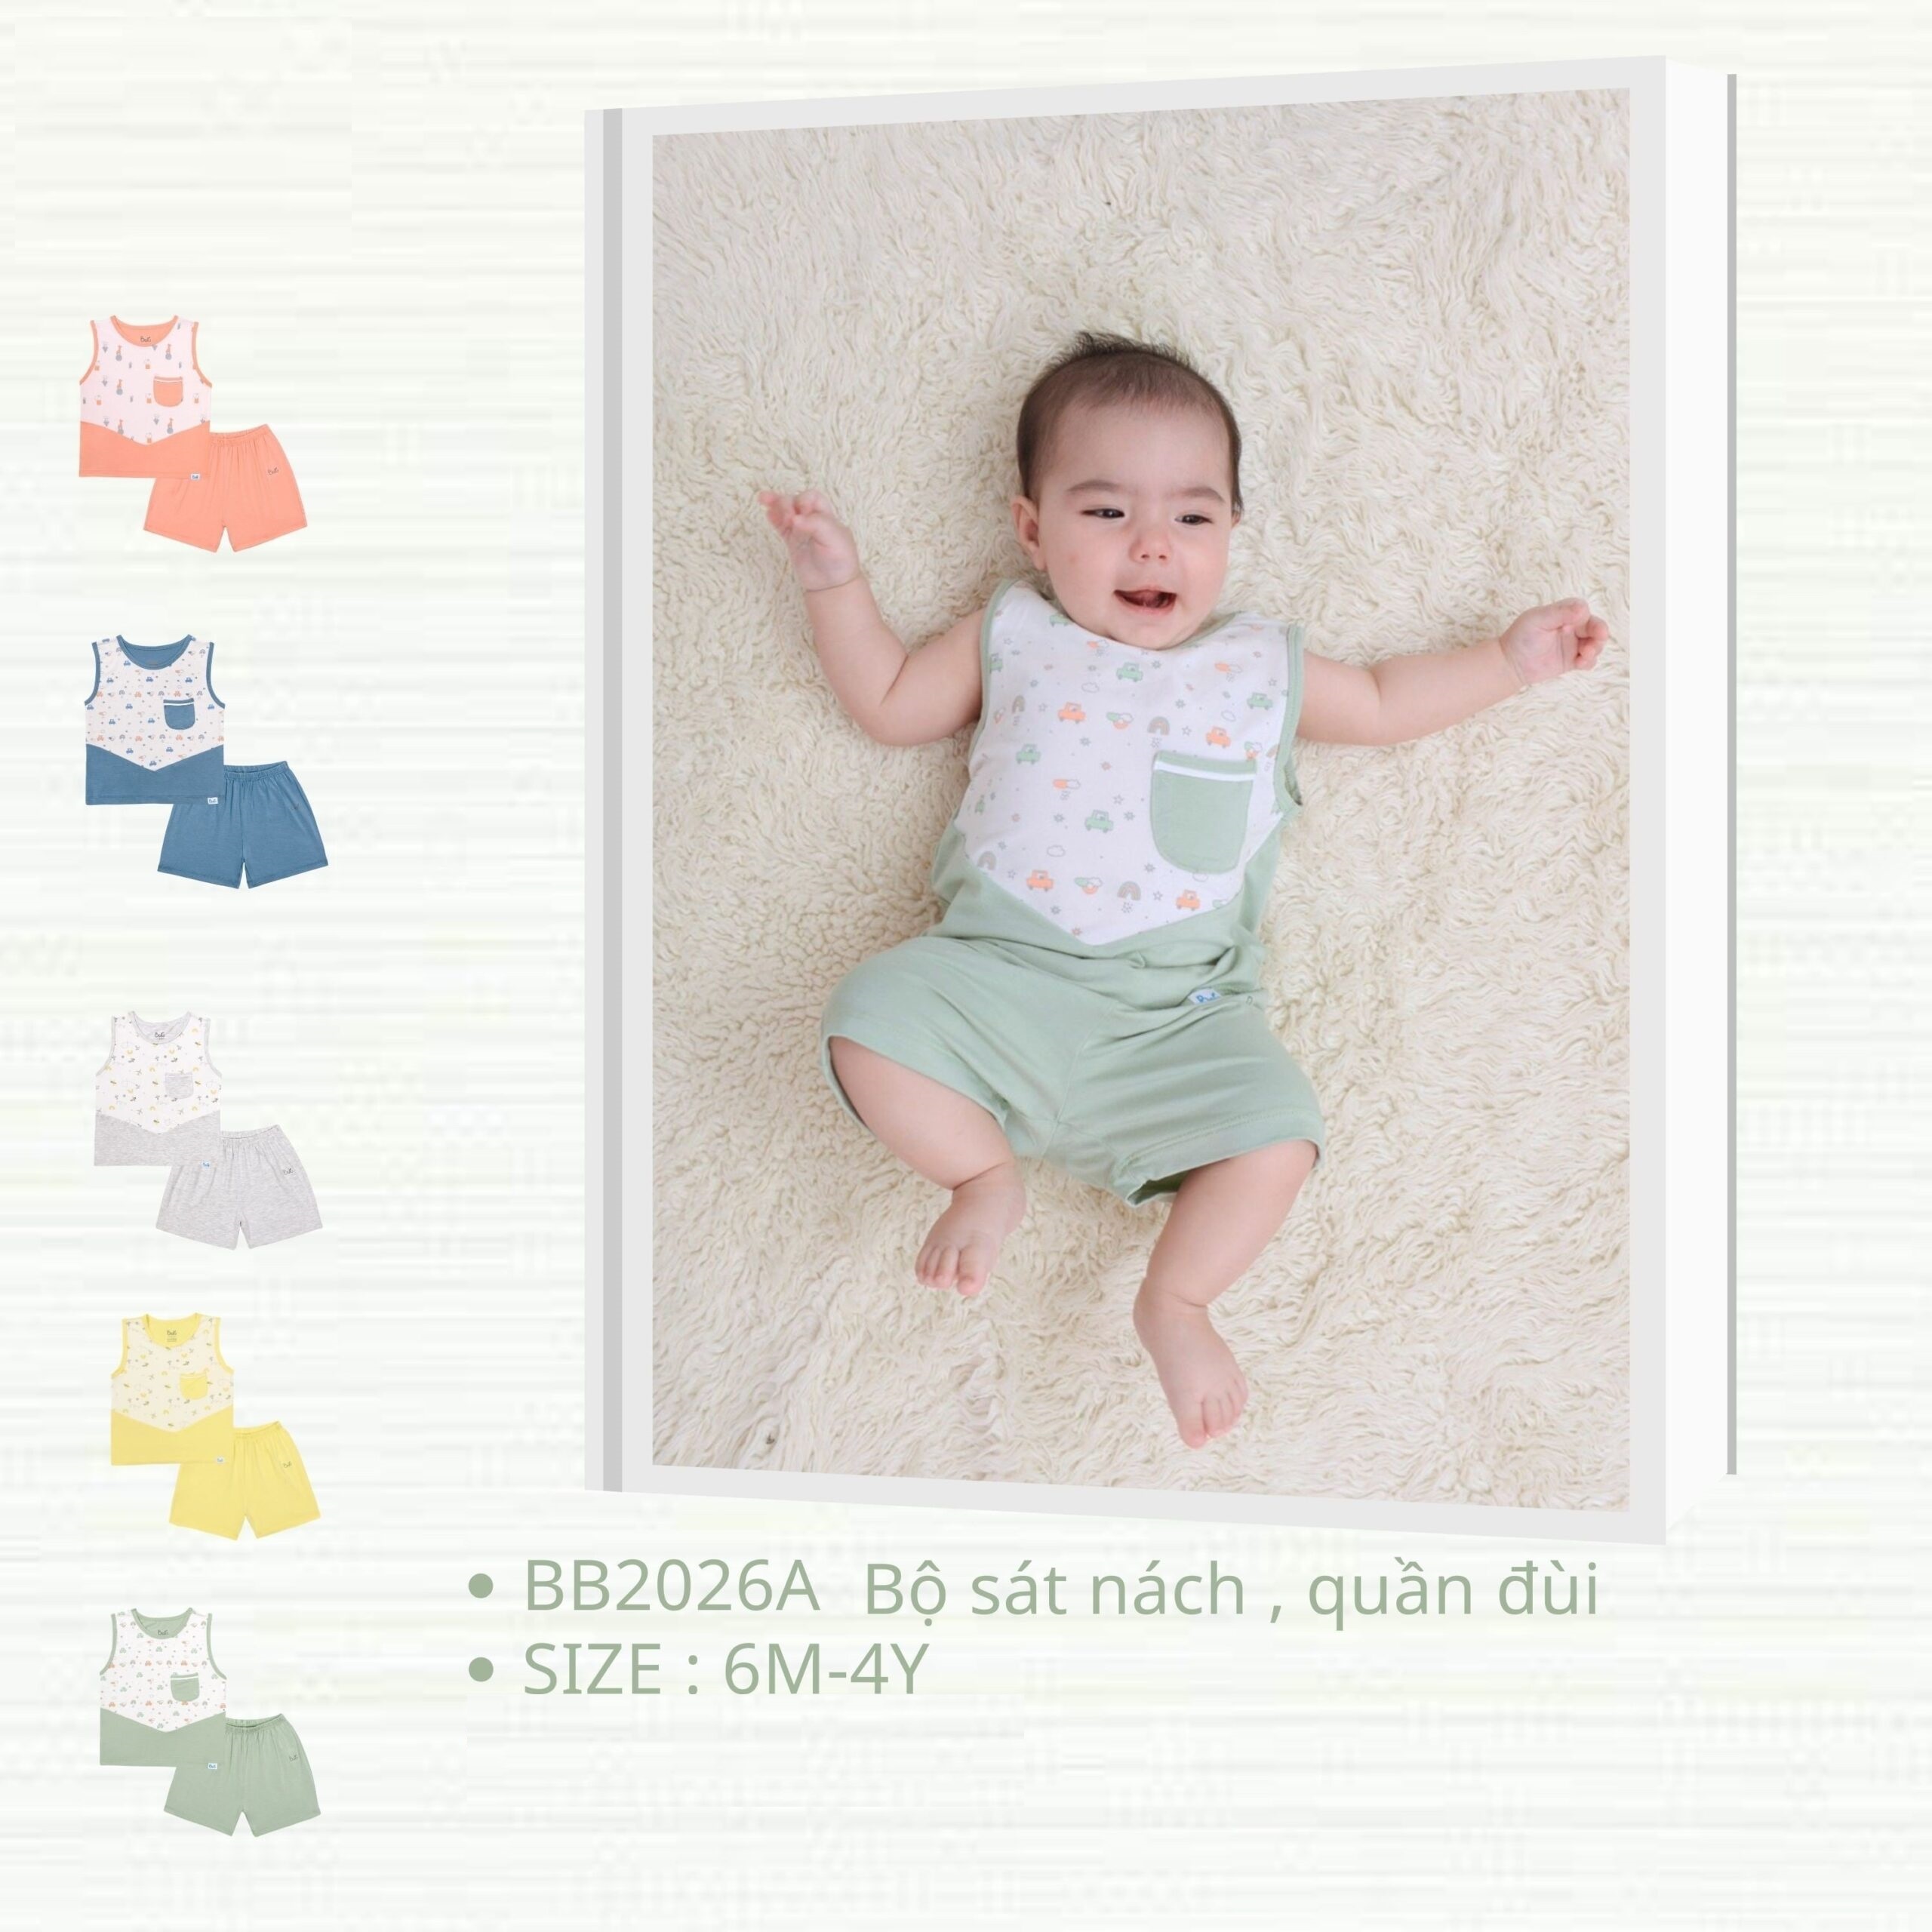 Bộ Sát Nách  BARU cho bé chất cotton 4C , thời trang trẻ em ( 6M -4Y )